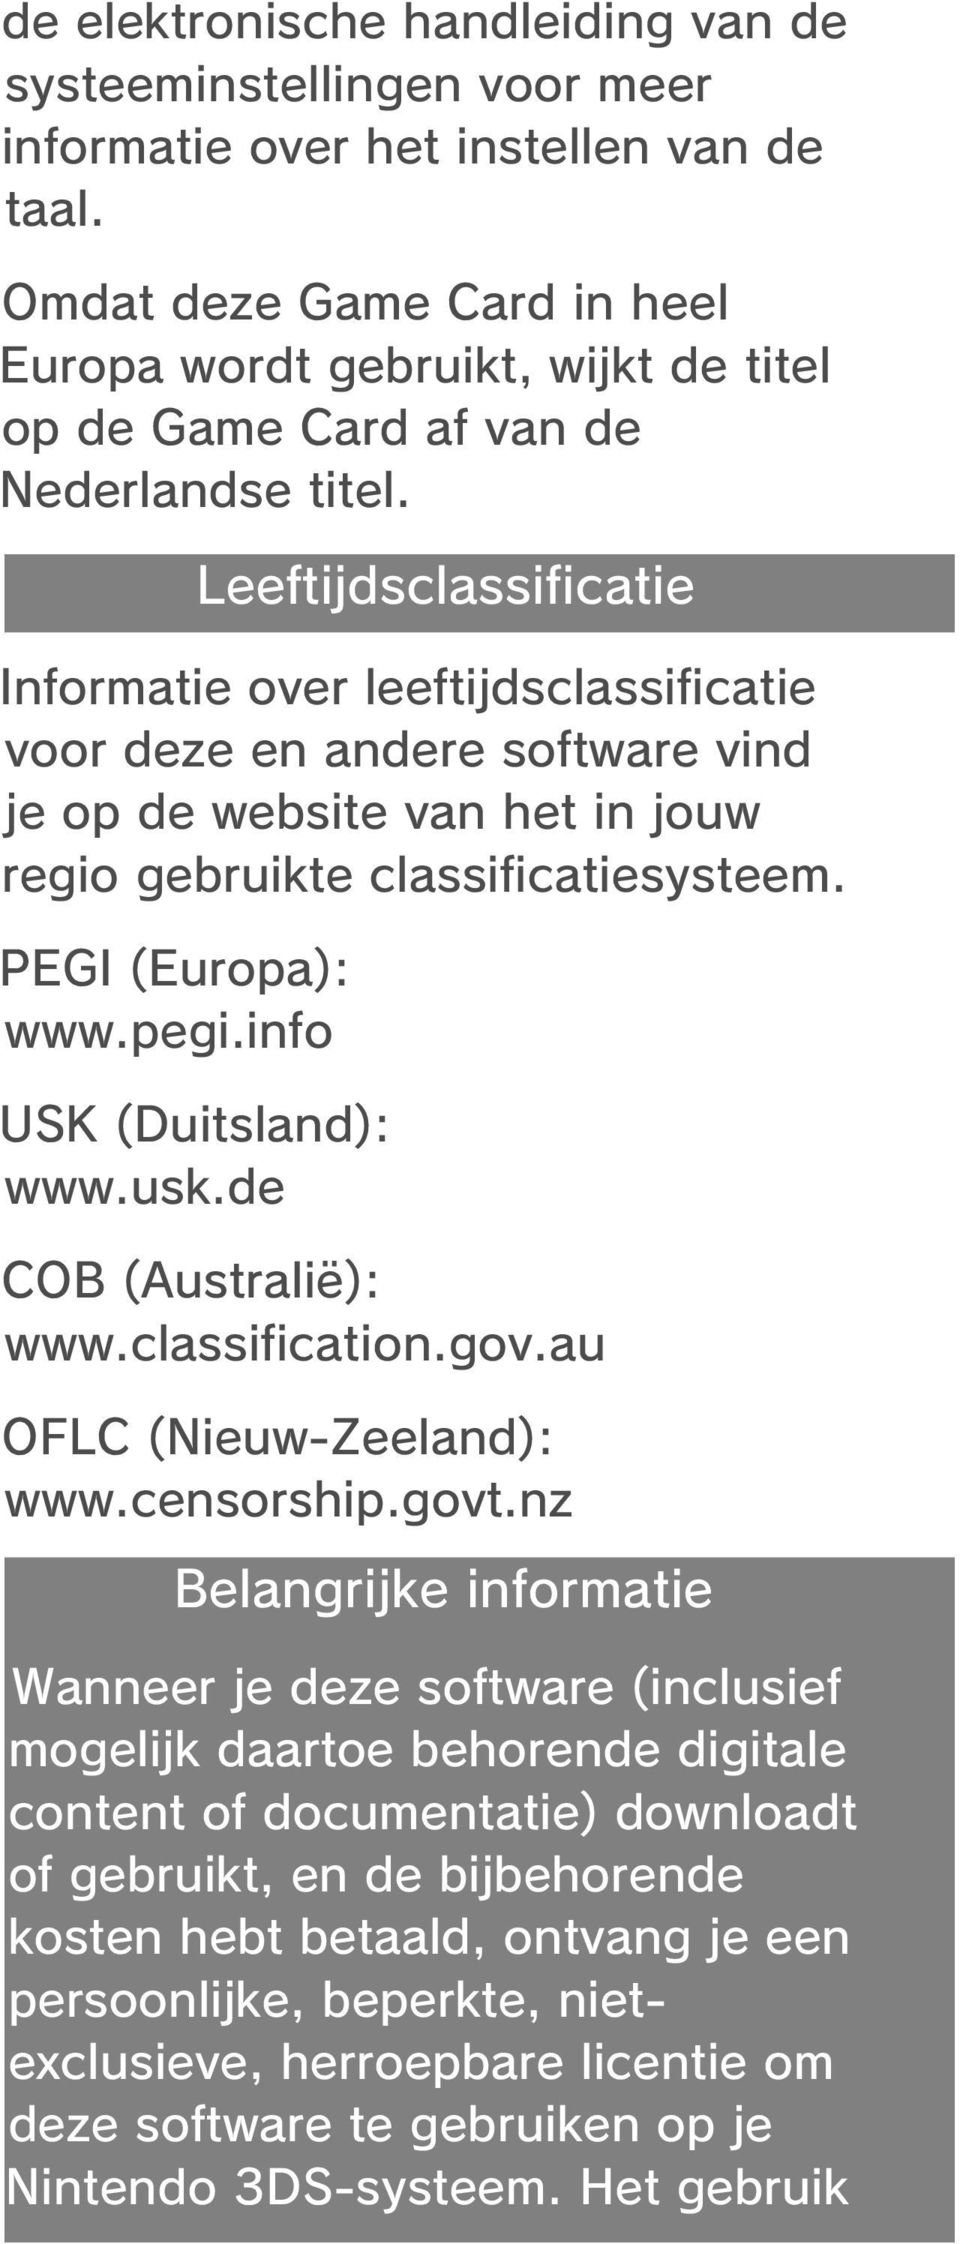 Informatie over leeftijdsclassificatie voor deze en andere software vind je op de website van het in jouw regio gebruikte classificatiesysteem. PEGI (Europa): www.pegi.info USK (Duitsland): www.usk.